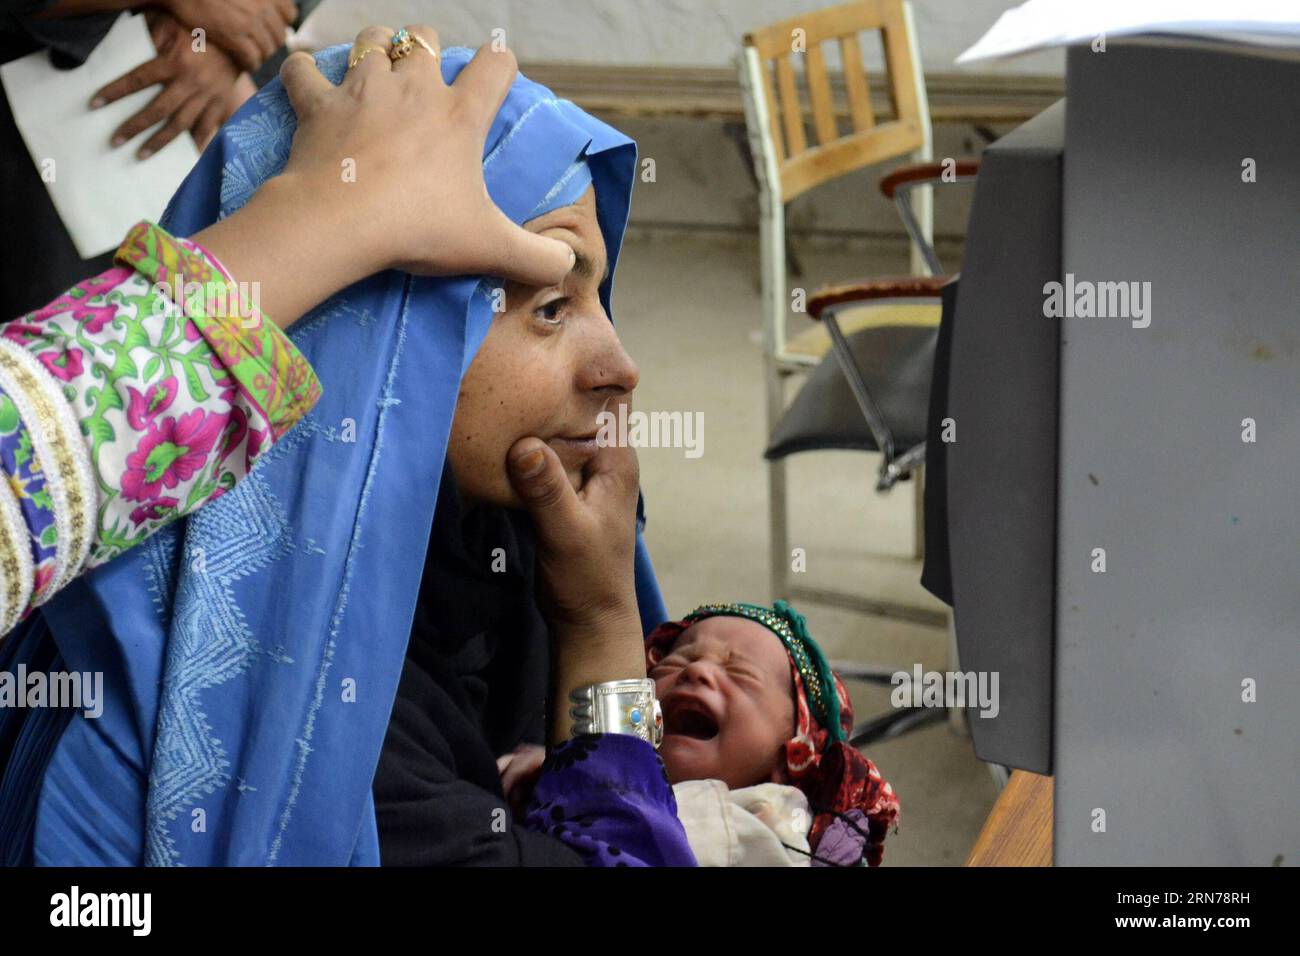 (150826) -- QUETTA, 26 agosto 2015 -- un dipendente dell'alto Commissariato delle Nazioni Unite per i rifugiati (UNHCR) scansiona un occhio di una donna rifugiata afghana in un centro di registrazione dell'UNHCR nel sud-ovest del Pakistan, Quetta, 26 agosto 2015. Attualmente ci sono 1,5 milioni di rifugiati afghani registrati in Pakistan. ) (lrz) PAKISTAN-QUETTA-AFGHANISTAN-REFUGEES Asad PUBLICATIONxNOTxINxCHN 150826 Quetta Aug 26 2015 a dipendente dell'alto Commissariato delle Nazioni Unite per i rifugiati l'UNHCR esegue scansioni di Eye of to Afghan Refugee Woman AT a UNHCR Registration Centre in Southwest Pakistan S Quetta Aug 26 2015 Foto Stock